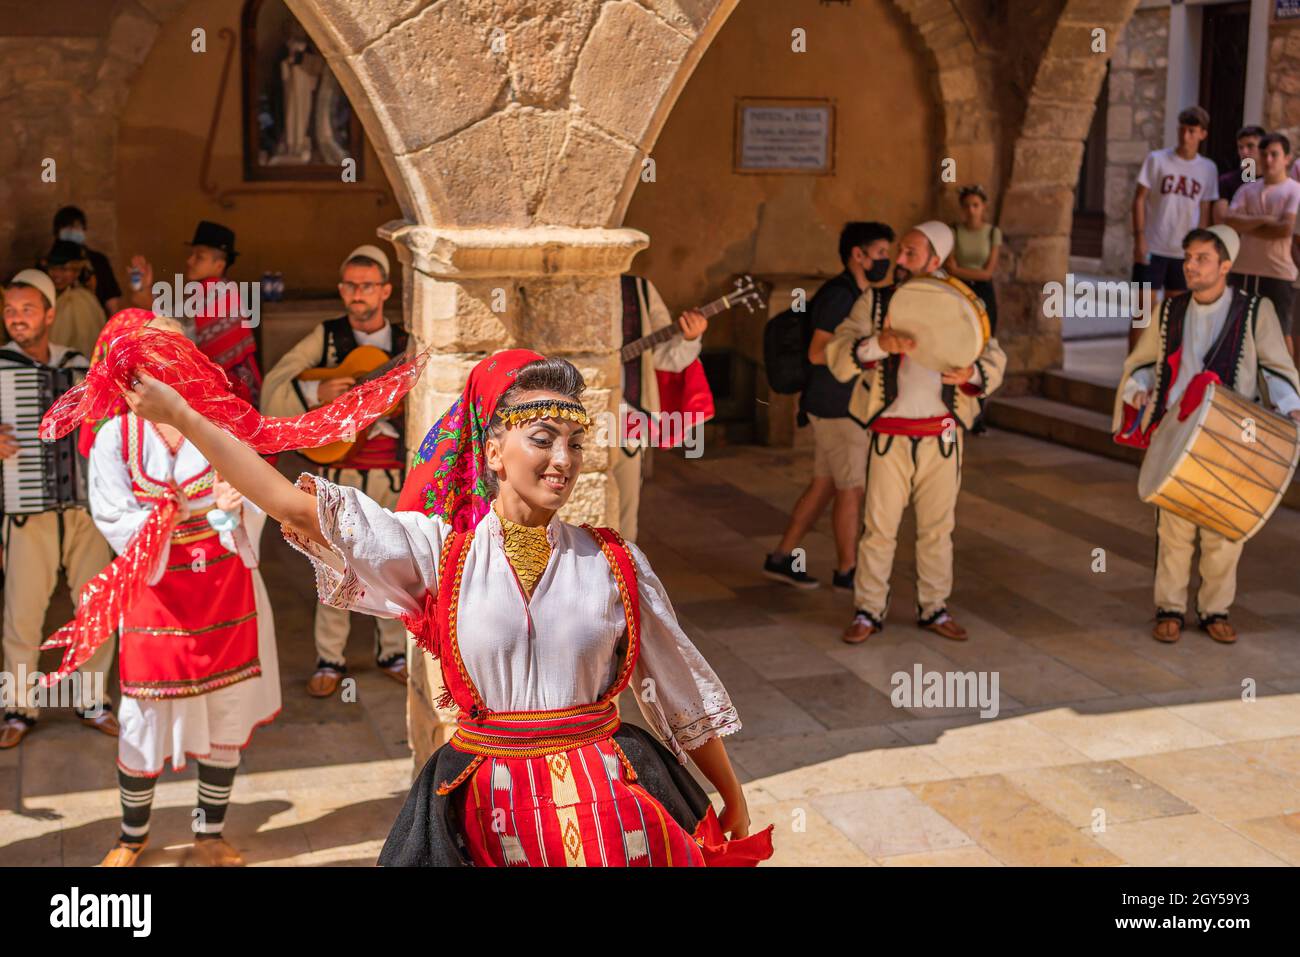 Danza popolare dalla Macedonia in un festival folk di strada a Montblanc, Festival Mayor Foto Stock